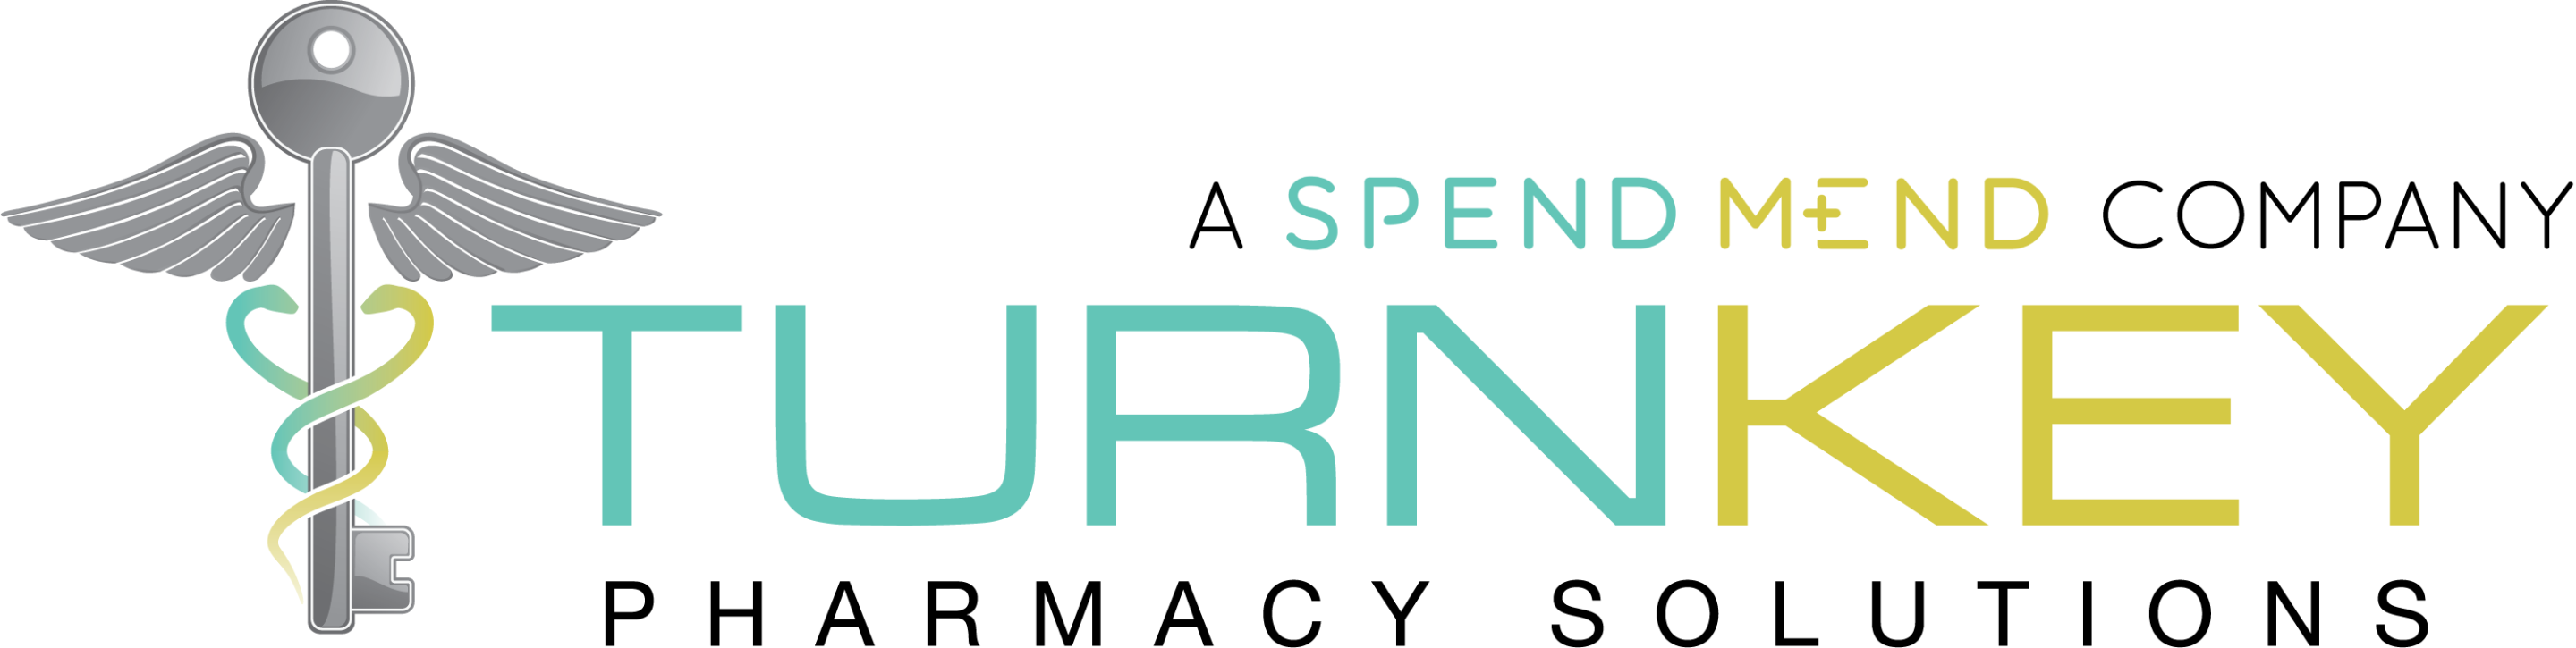 SpendMend Turnkey Logo